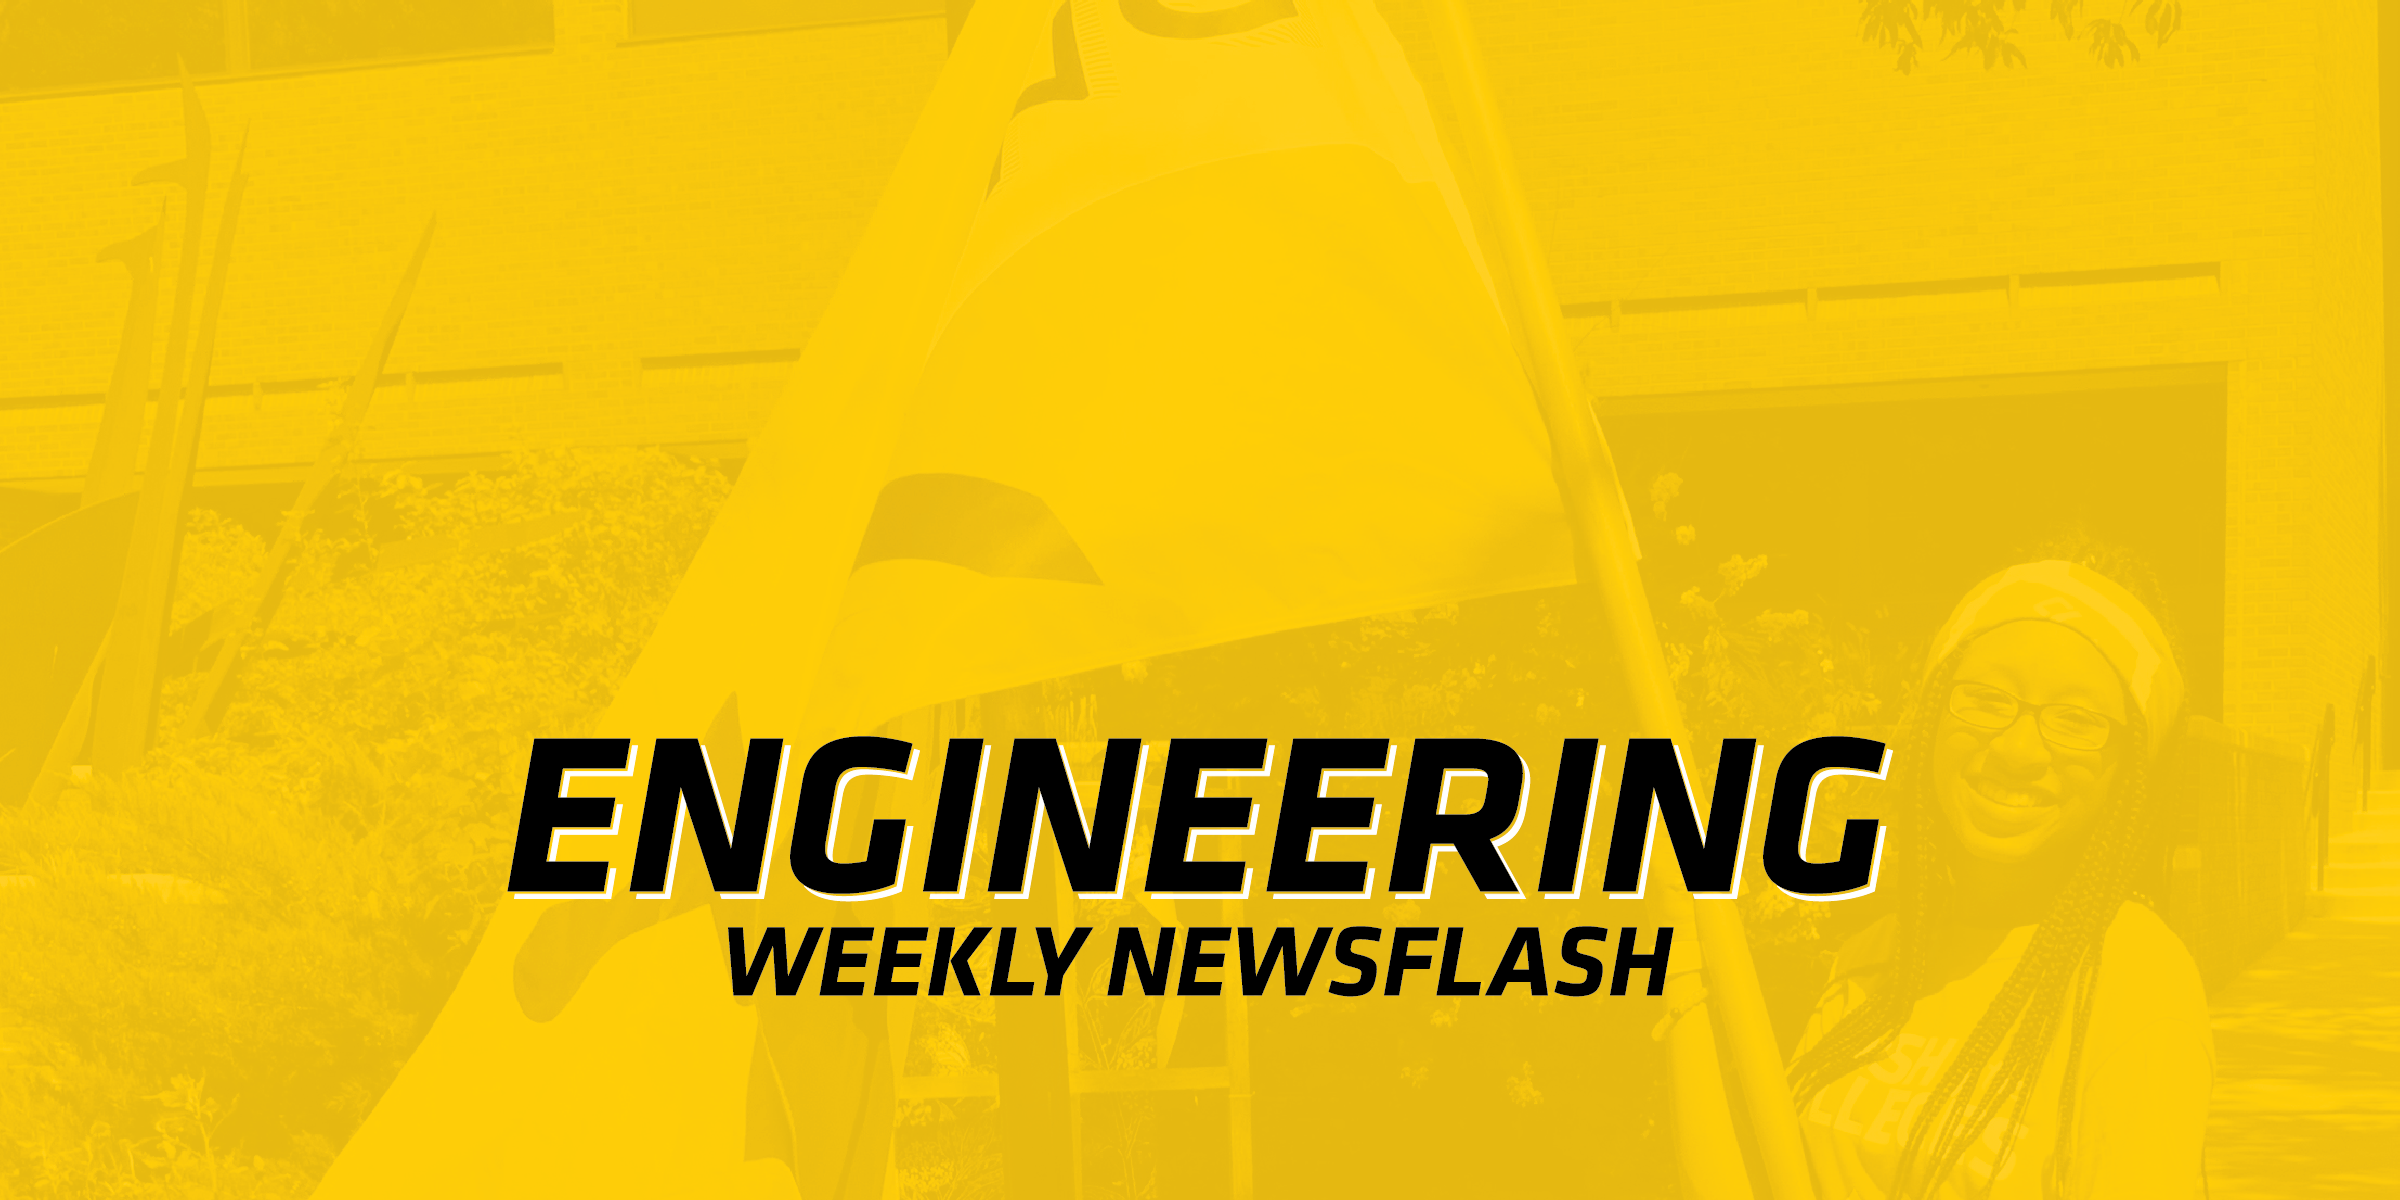 Engineering Weekly Newsflash